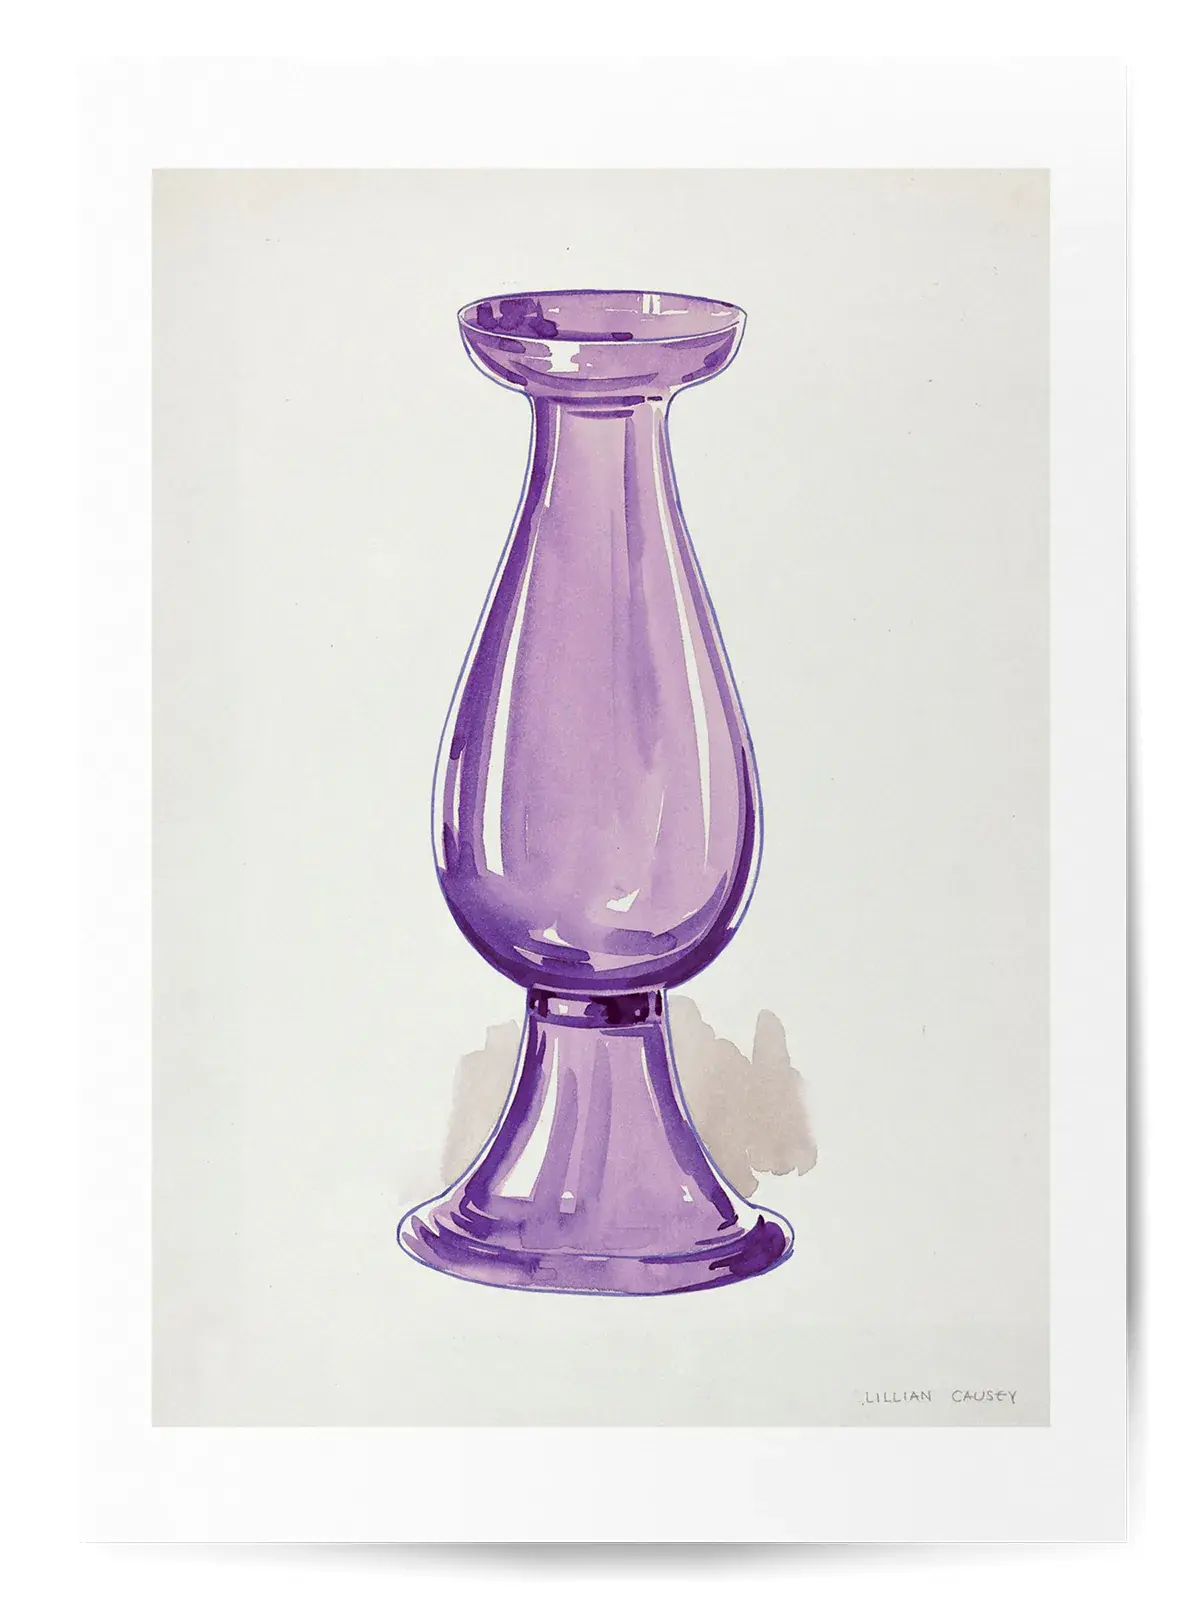 Affiche vase violet no3 1